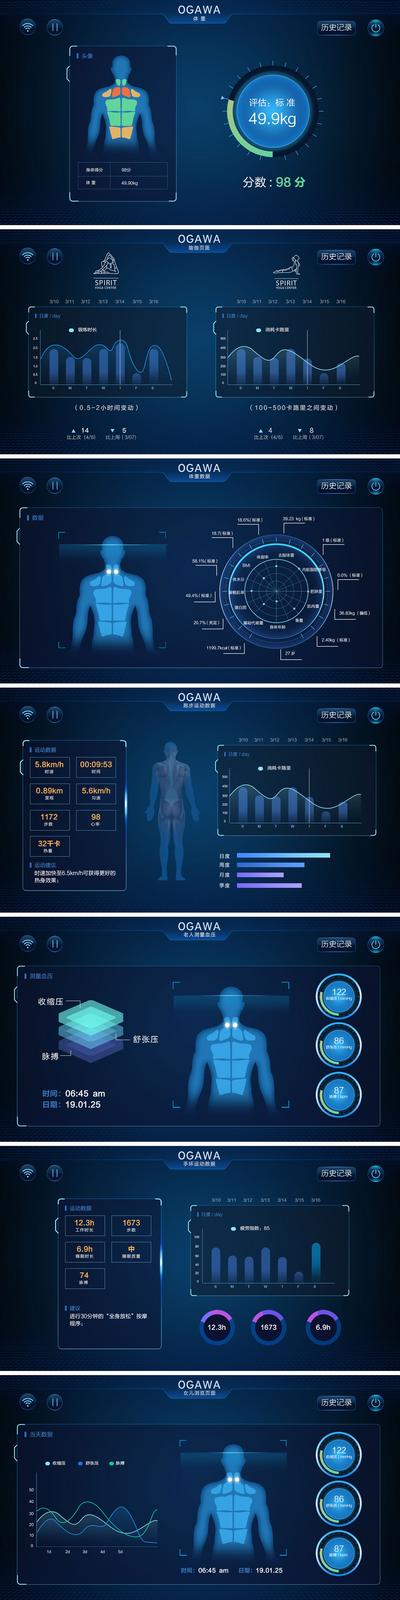 南门网 UI设计 界面设计 大数据 统计 科技 图表 运动 健康